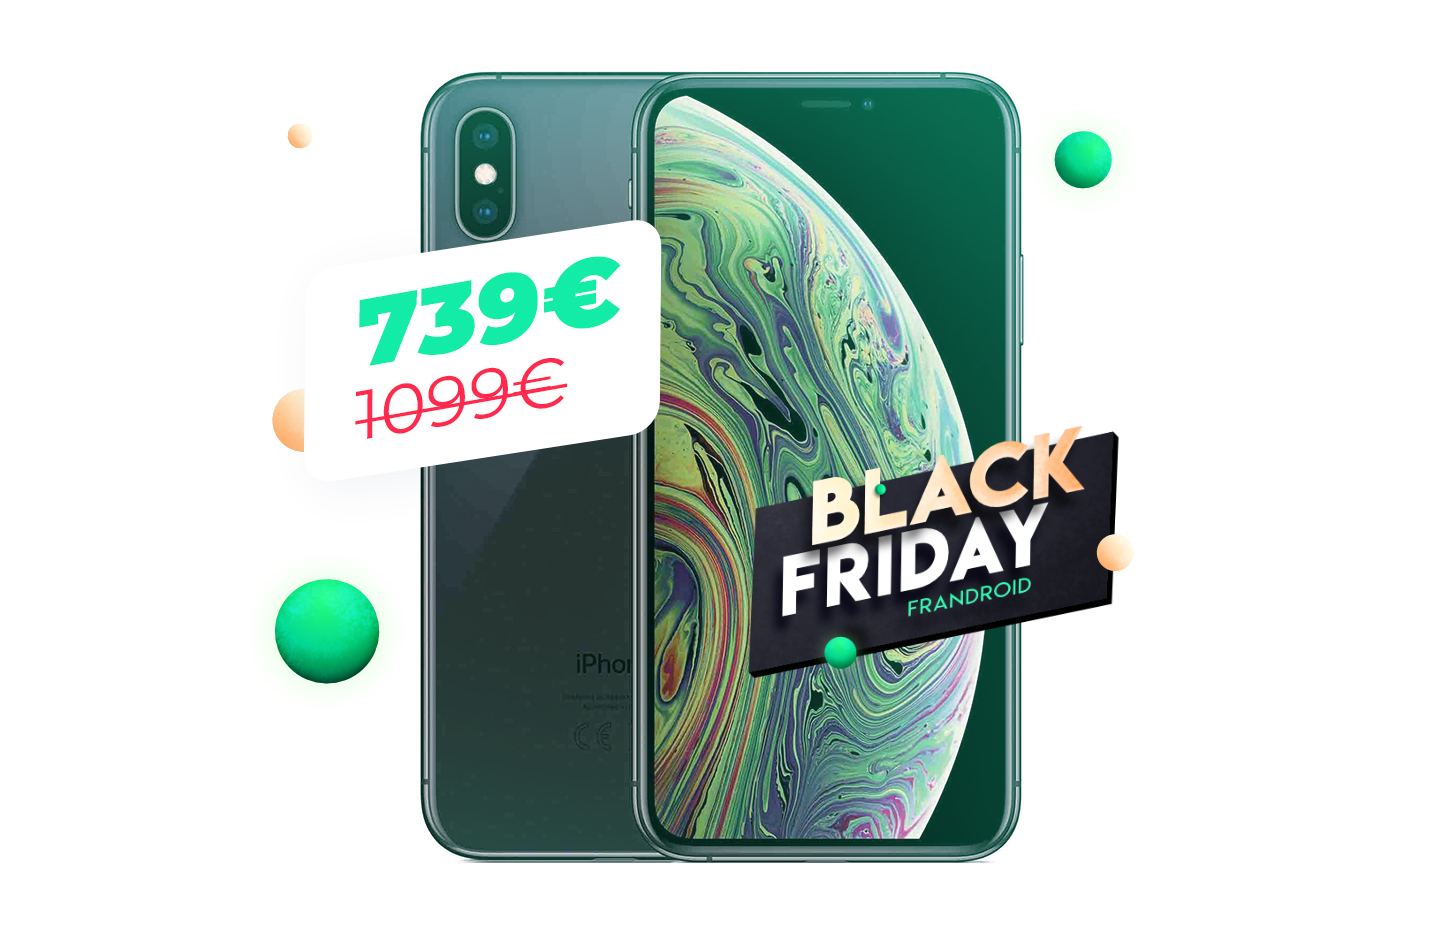 L’iPhone XS à moins de 750 euros, le Black Friday est généreux